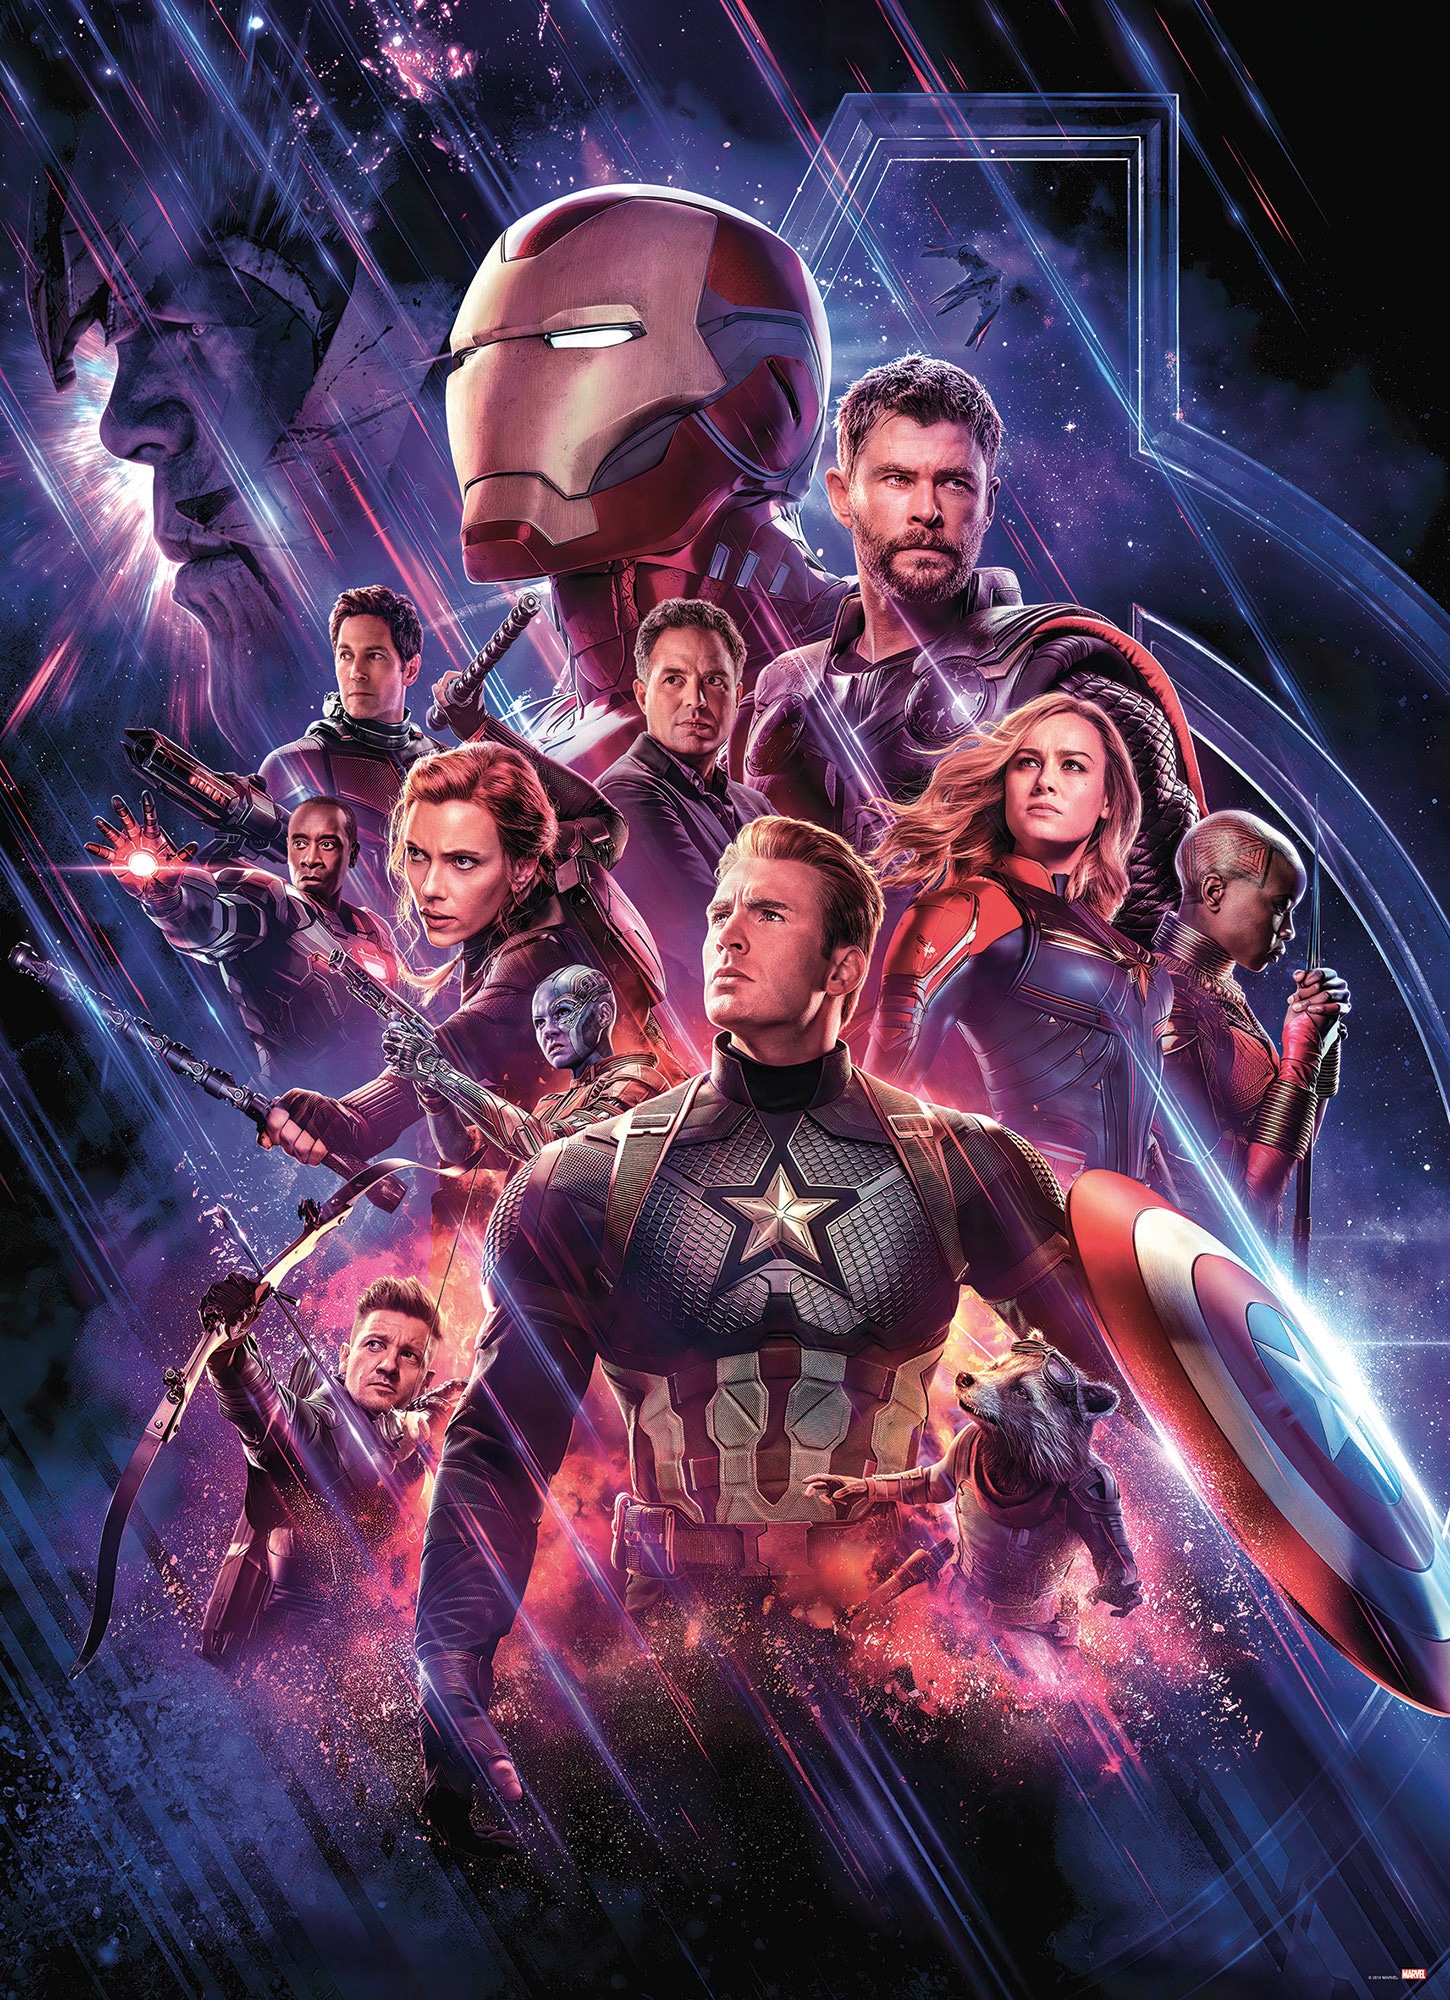 Fototapete »Avengers Endgame Movie Poster«, 184x254 cm (Breite x Höhe), inklusive...